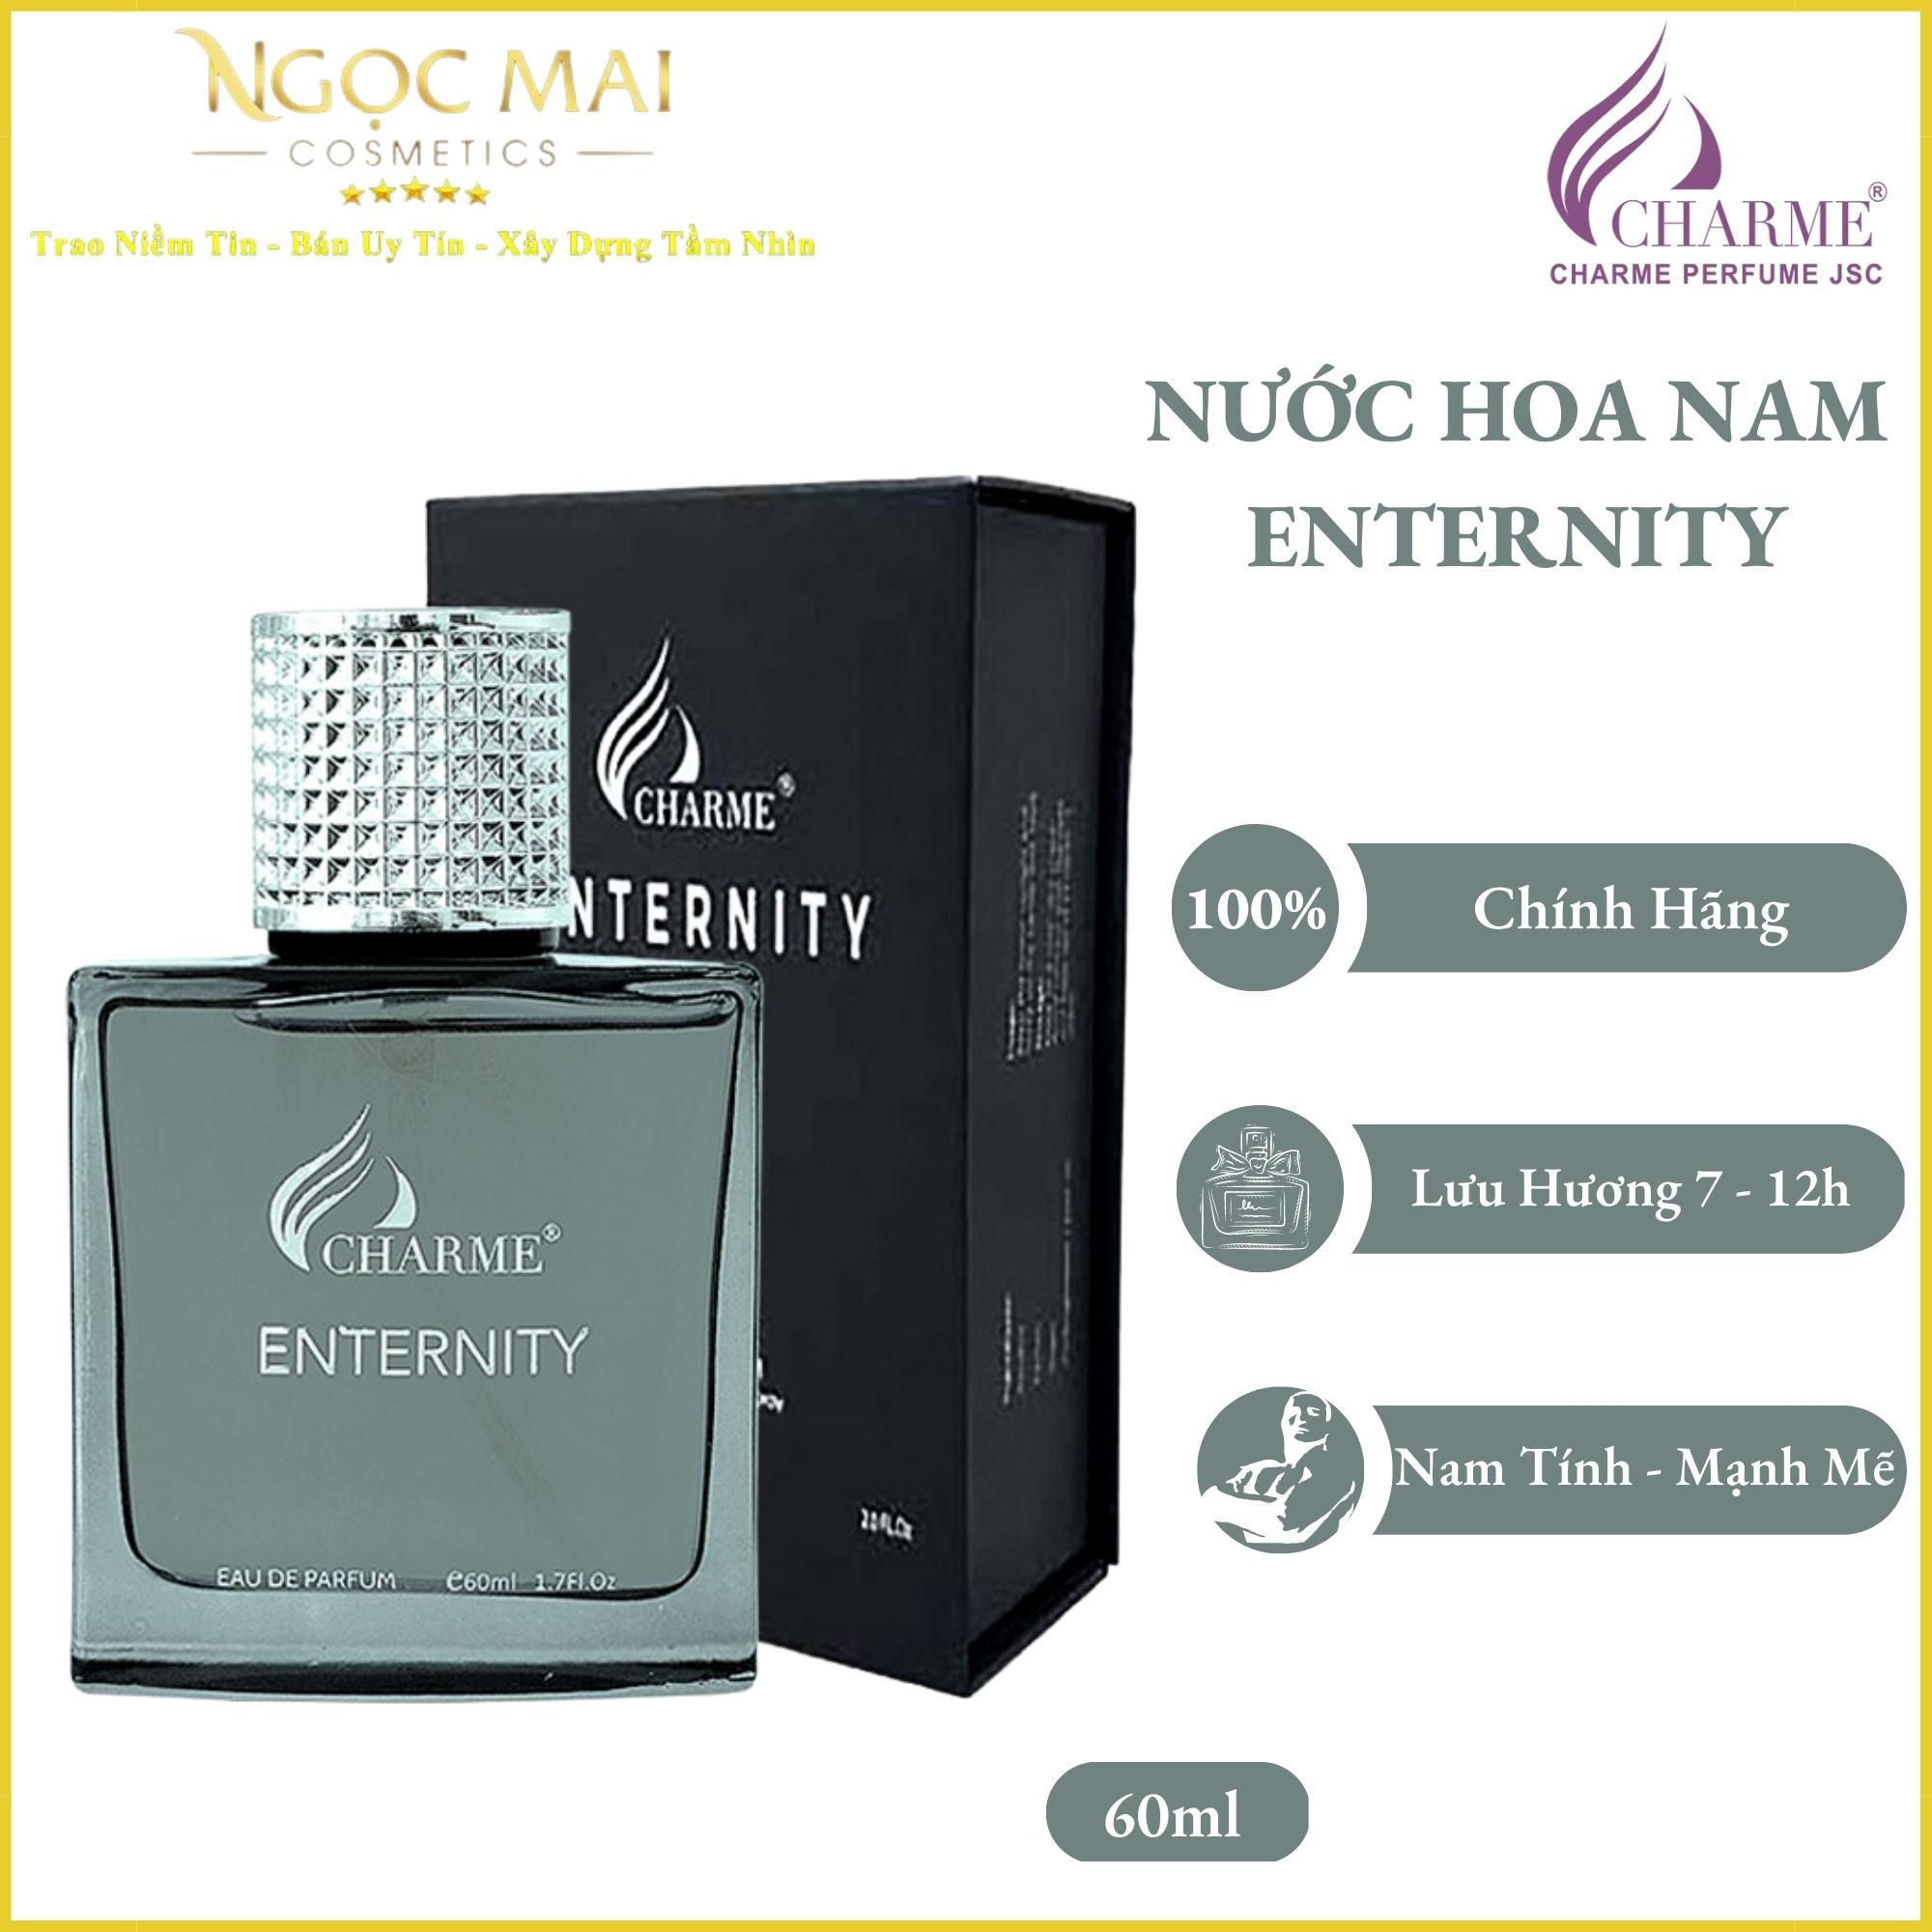 Nước Hoa Nam Charme Enternity (60ml) For Men chính hãng nam tính mạnh mẽ cá tính